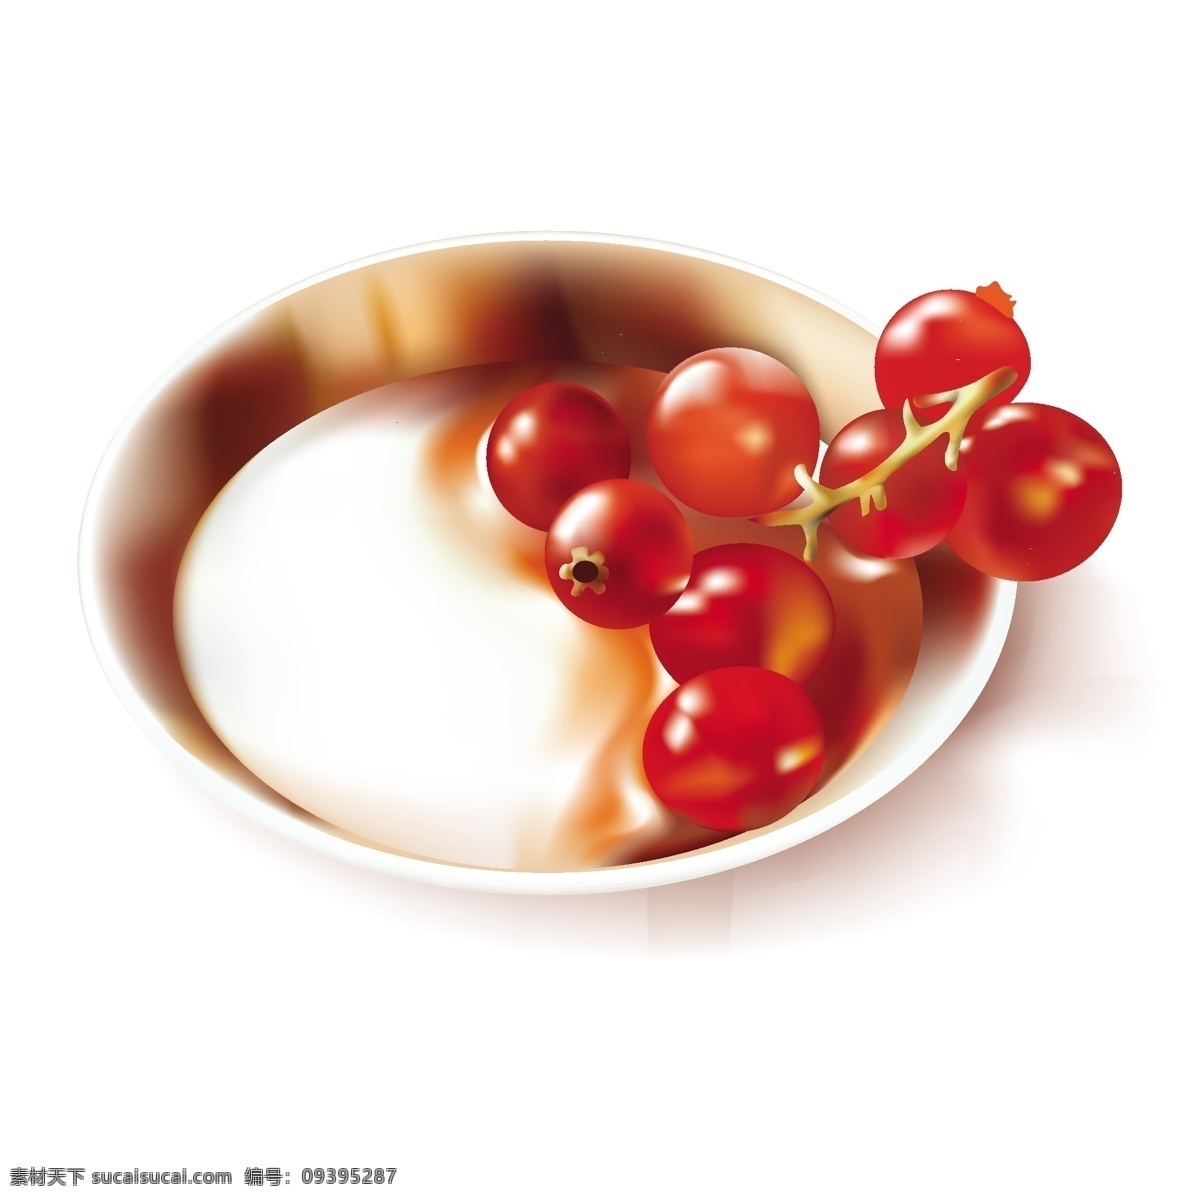 新鲜 水果 番茄 橄榄 盘子 矢量水果 矢量素材 西红柿 红色果实 矢量图 其他矢量图